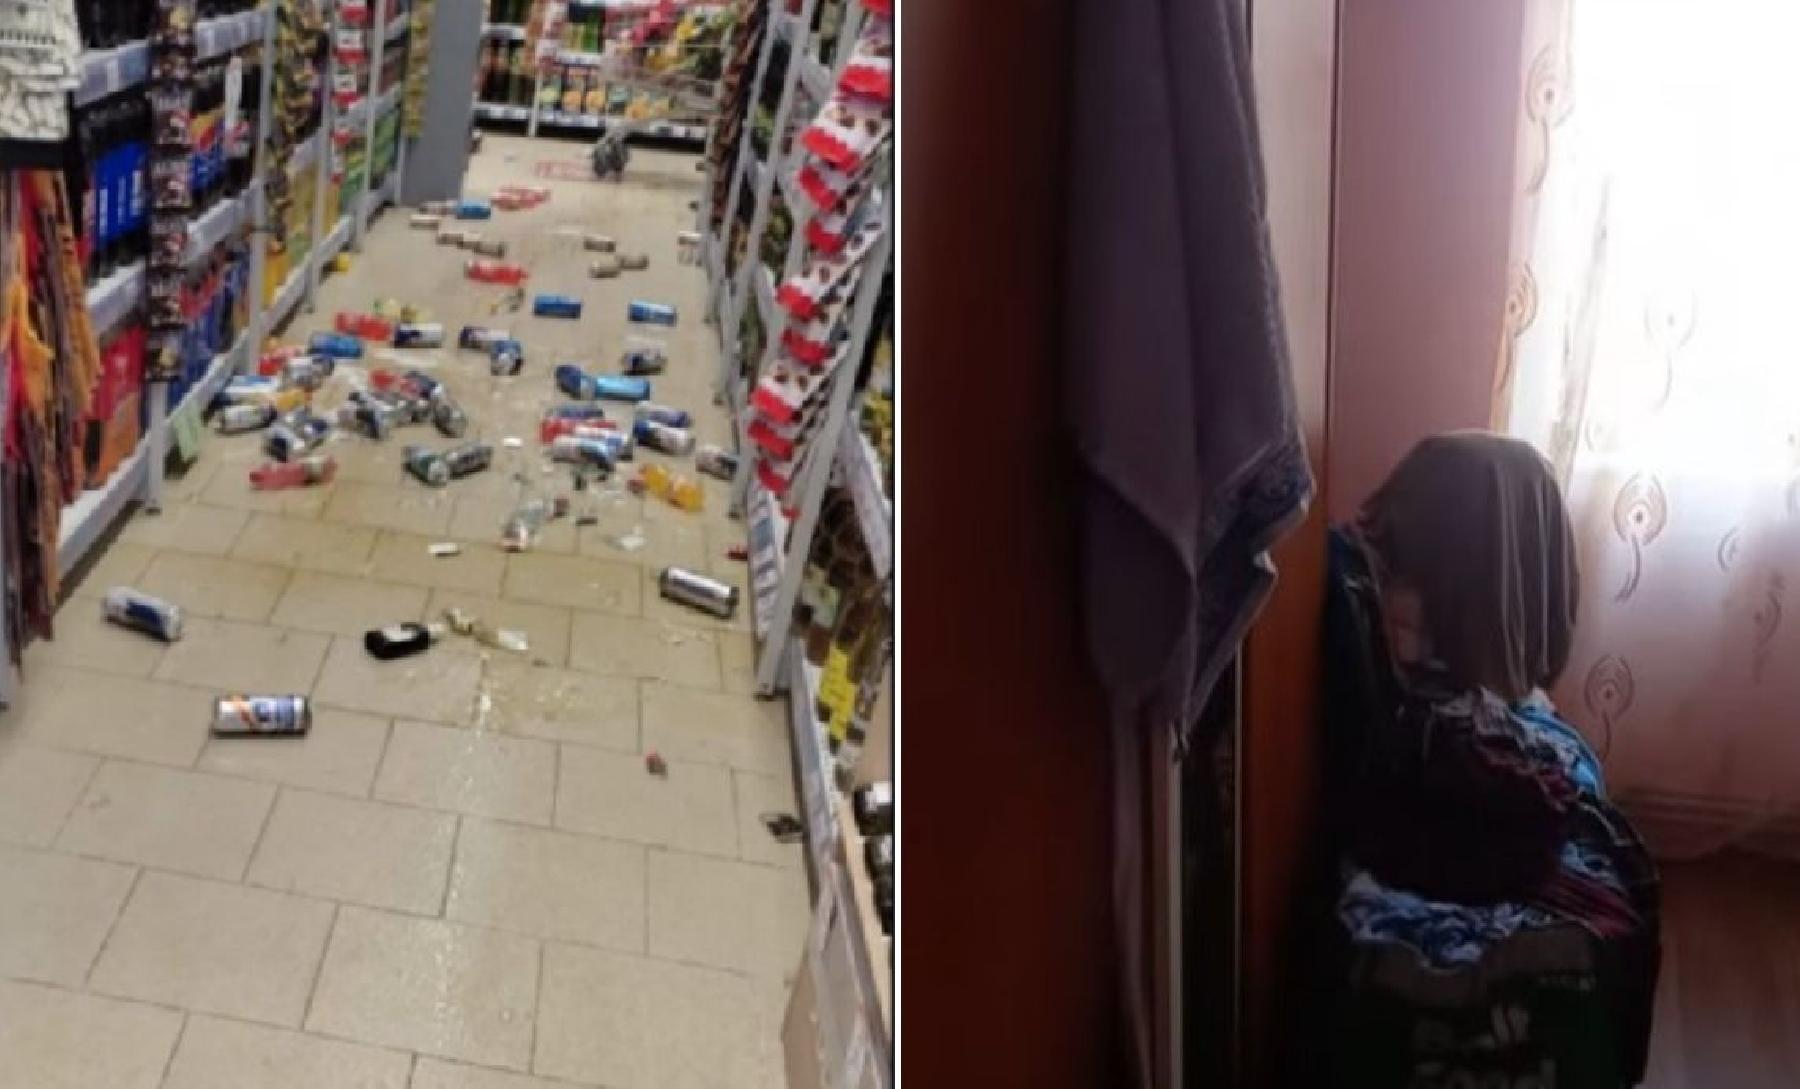 Prvi snimci zemljotresa u Rumuniji: Tresle se stolice, popadale stvari u prodavnici